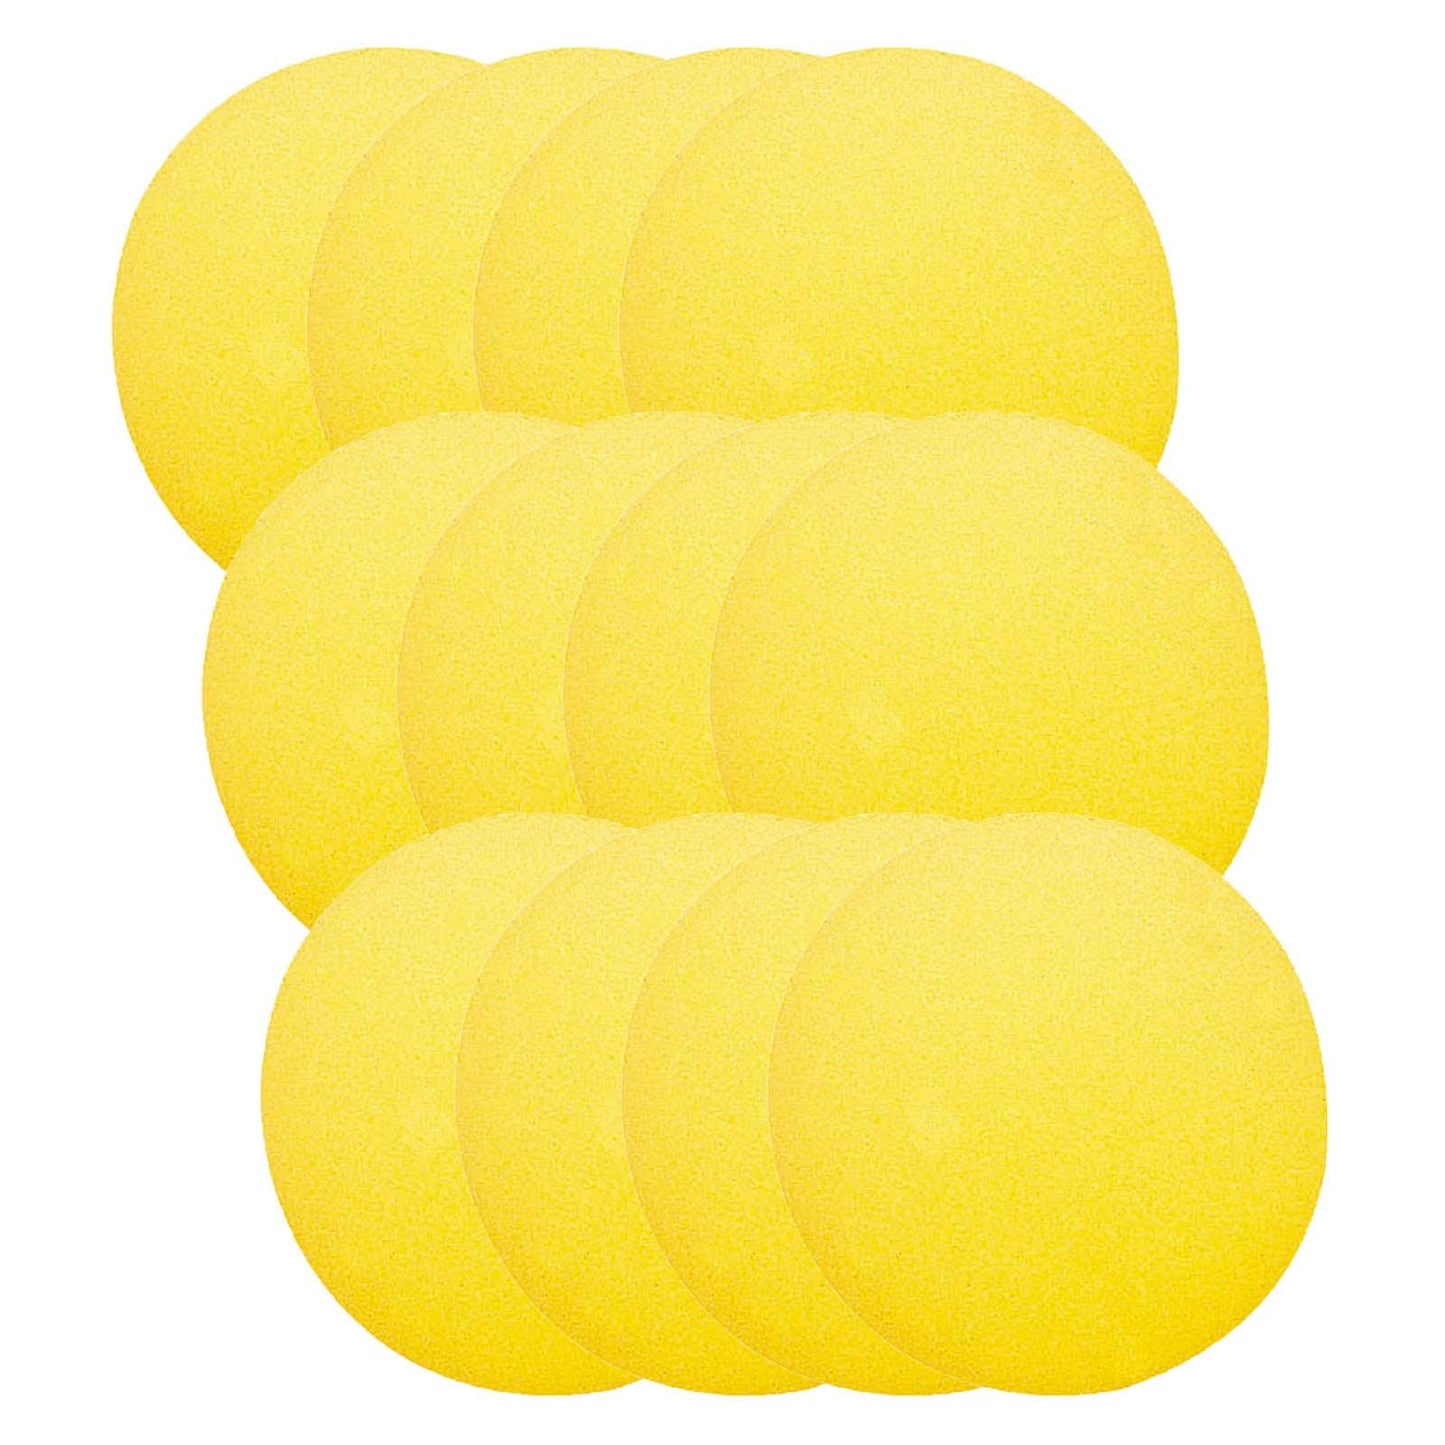 Foam Ball, 4", Pack of 12 - Loomini